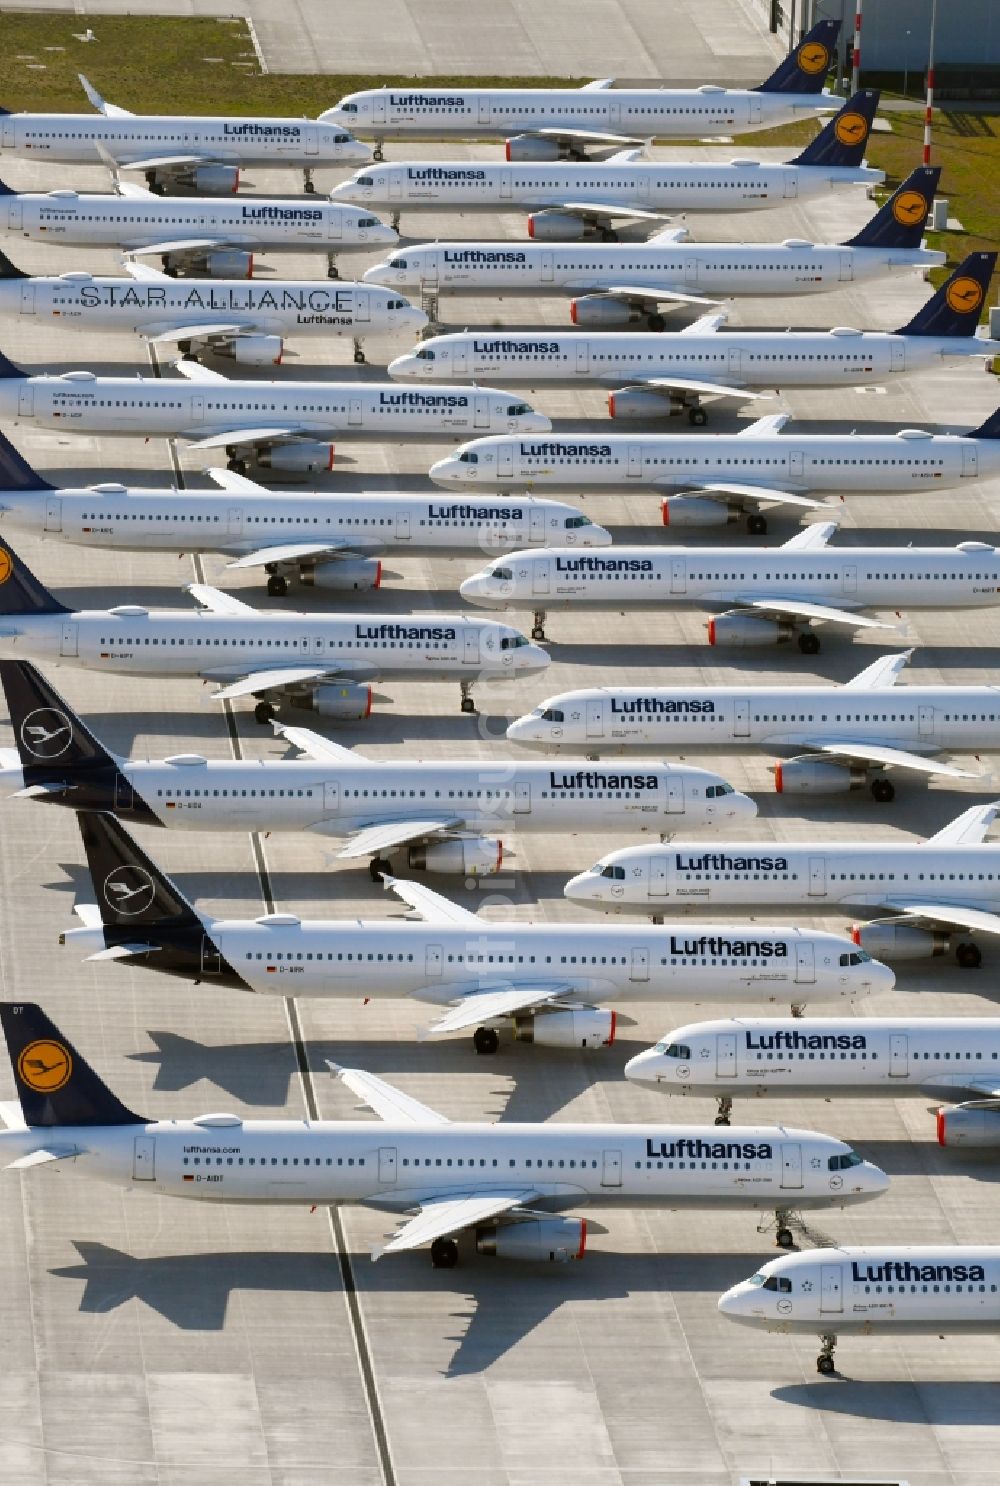 Luftaufnahme Schönefeld - Krisenbedingt stillgelegte Passagierflugzeuge der Fluggesellschaft Lufthansa auf der Parkposition - Abstellfläche auf dem Flughafen in Schönefeld im Bundesland Brandenburg, Deutschland